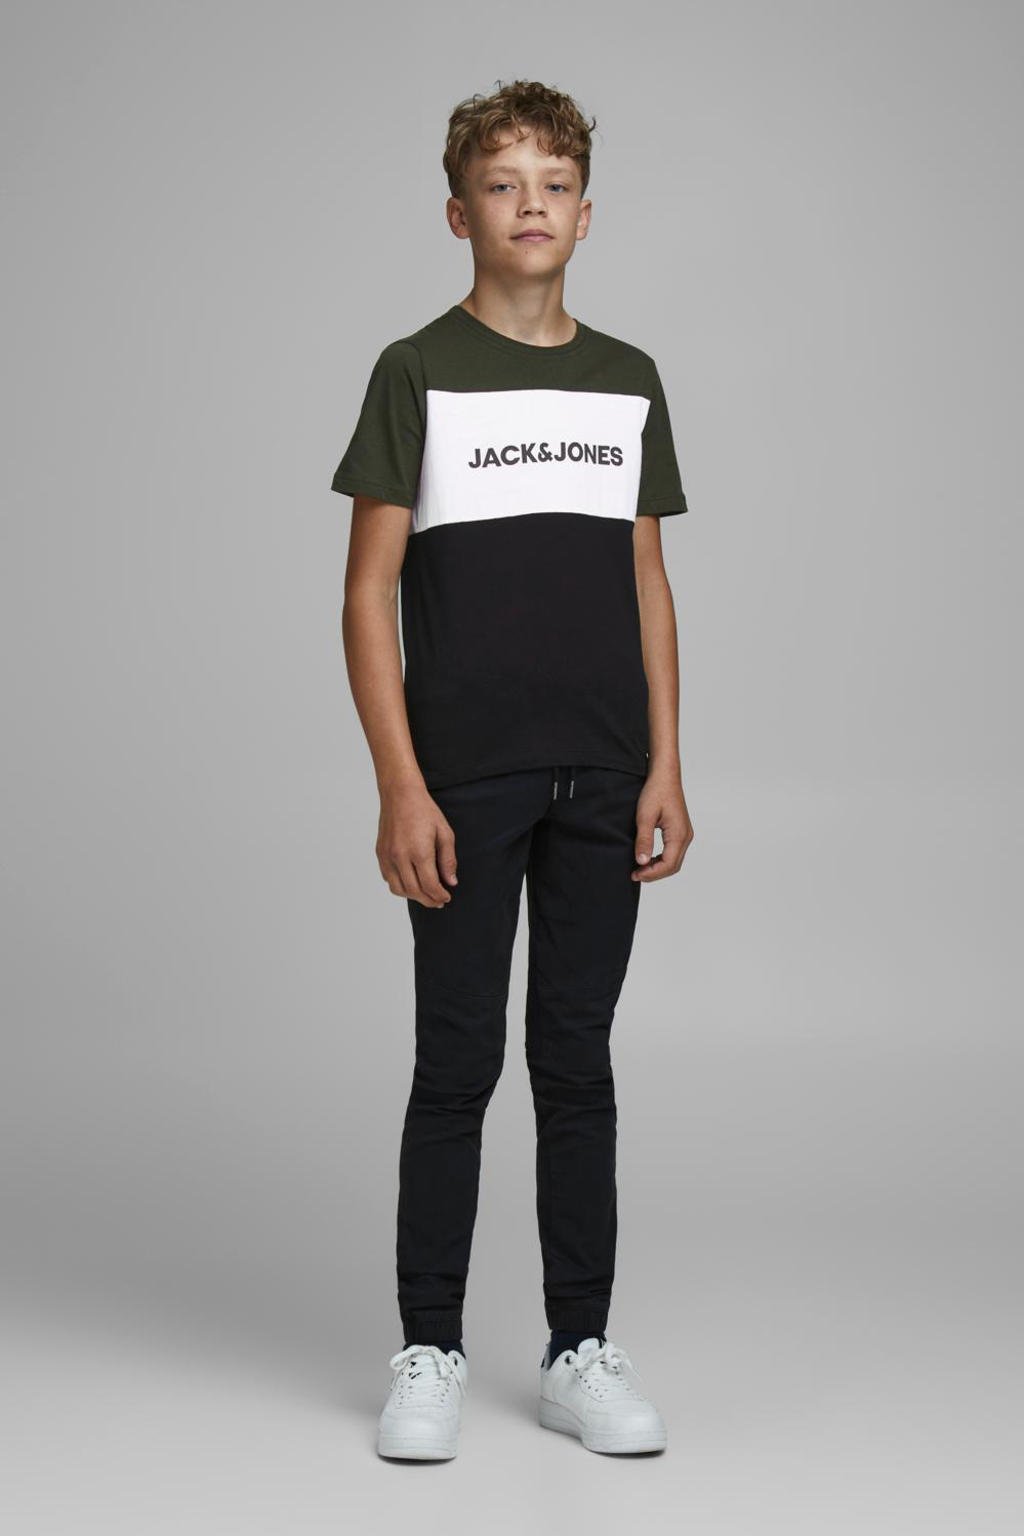 JACK & JONES JUNIOR T-shirt JJELOGO met logo army groen/wit/zwart